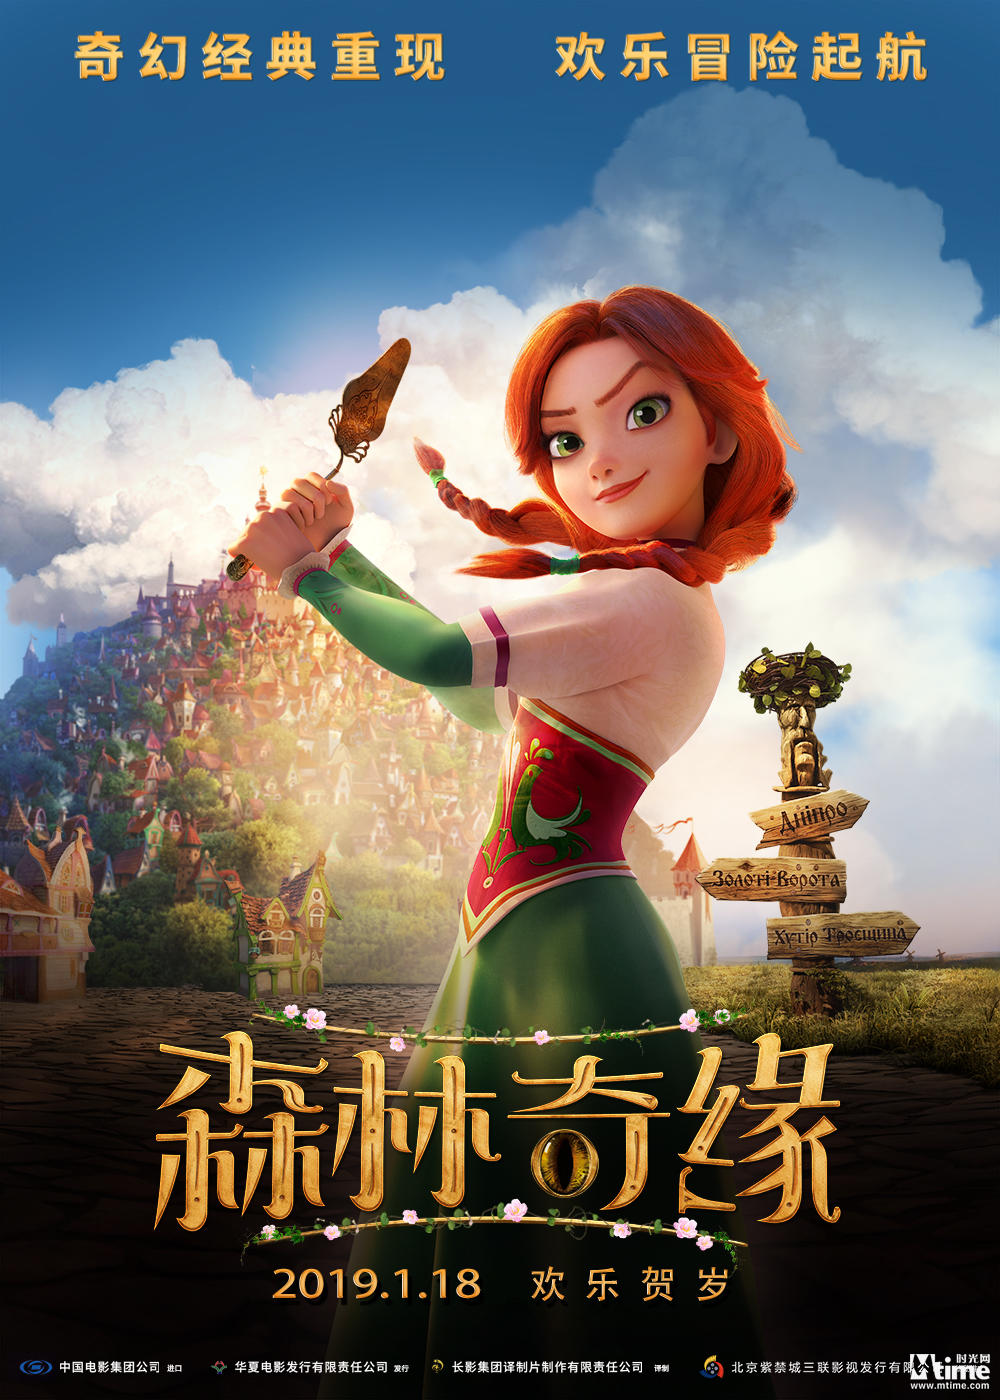 合家欢动画《森林奇缘》曝角色海报 公主骑士悉数登场 (图2)